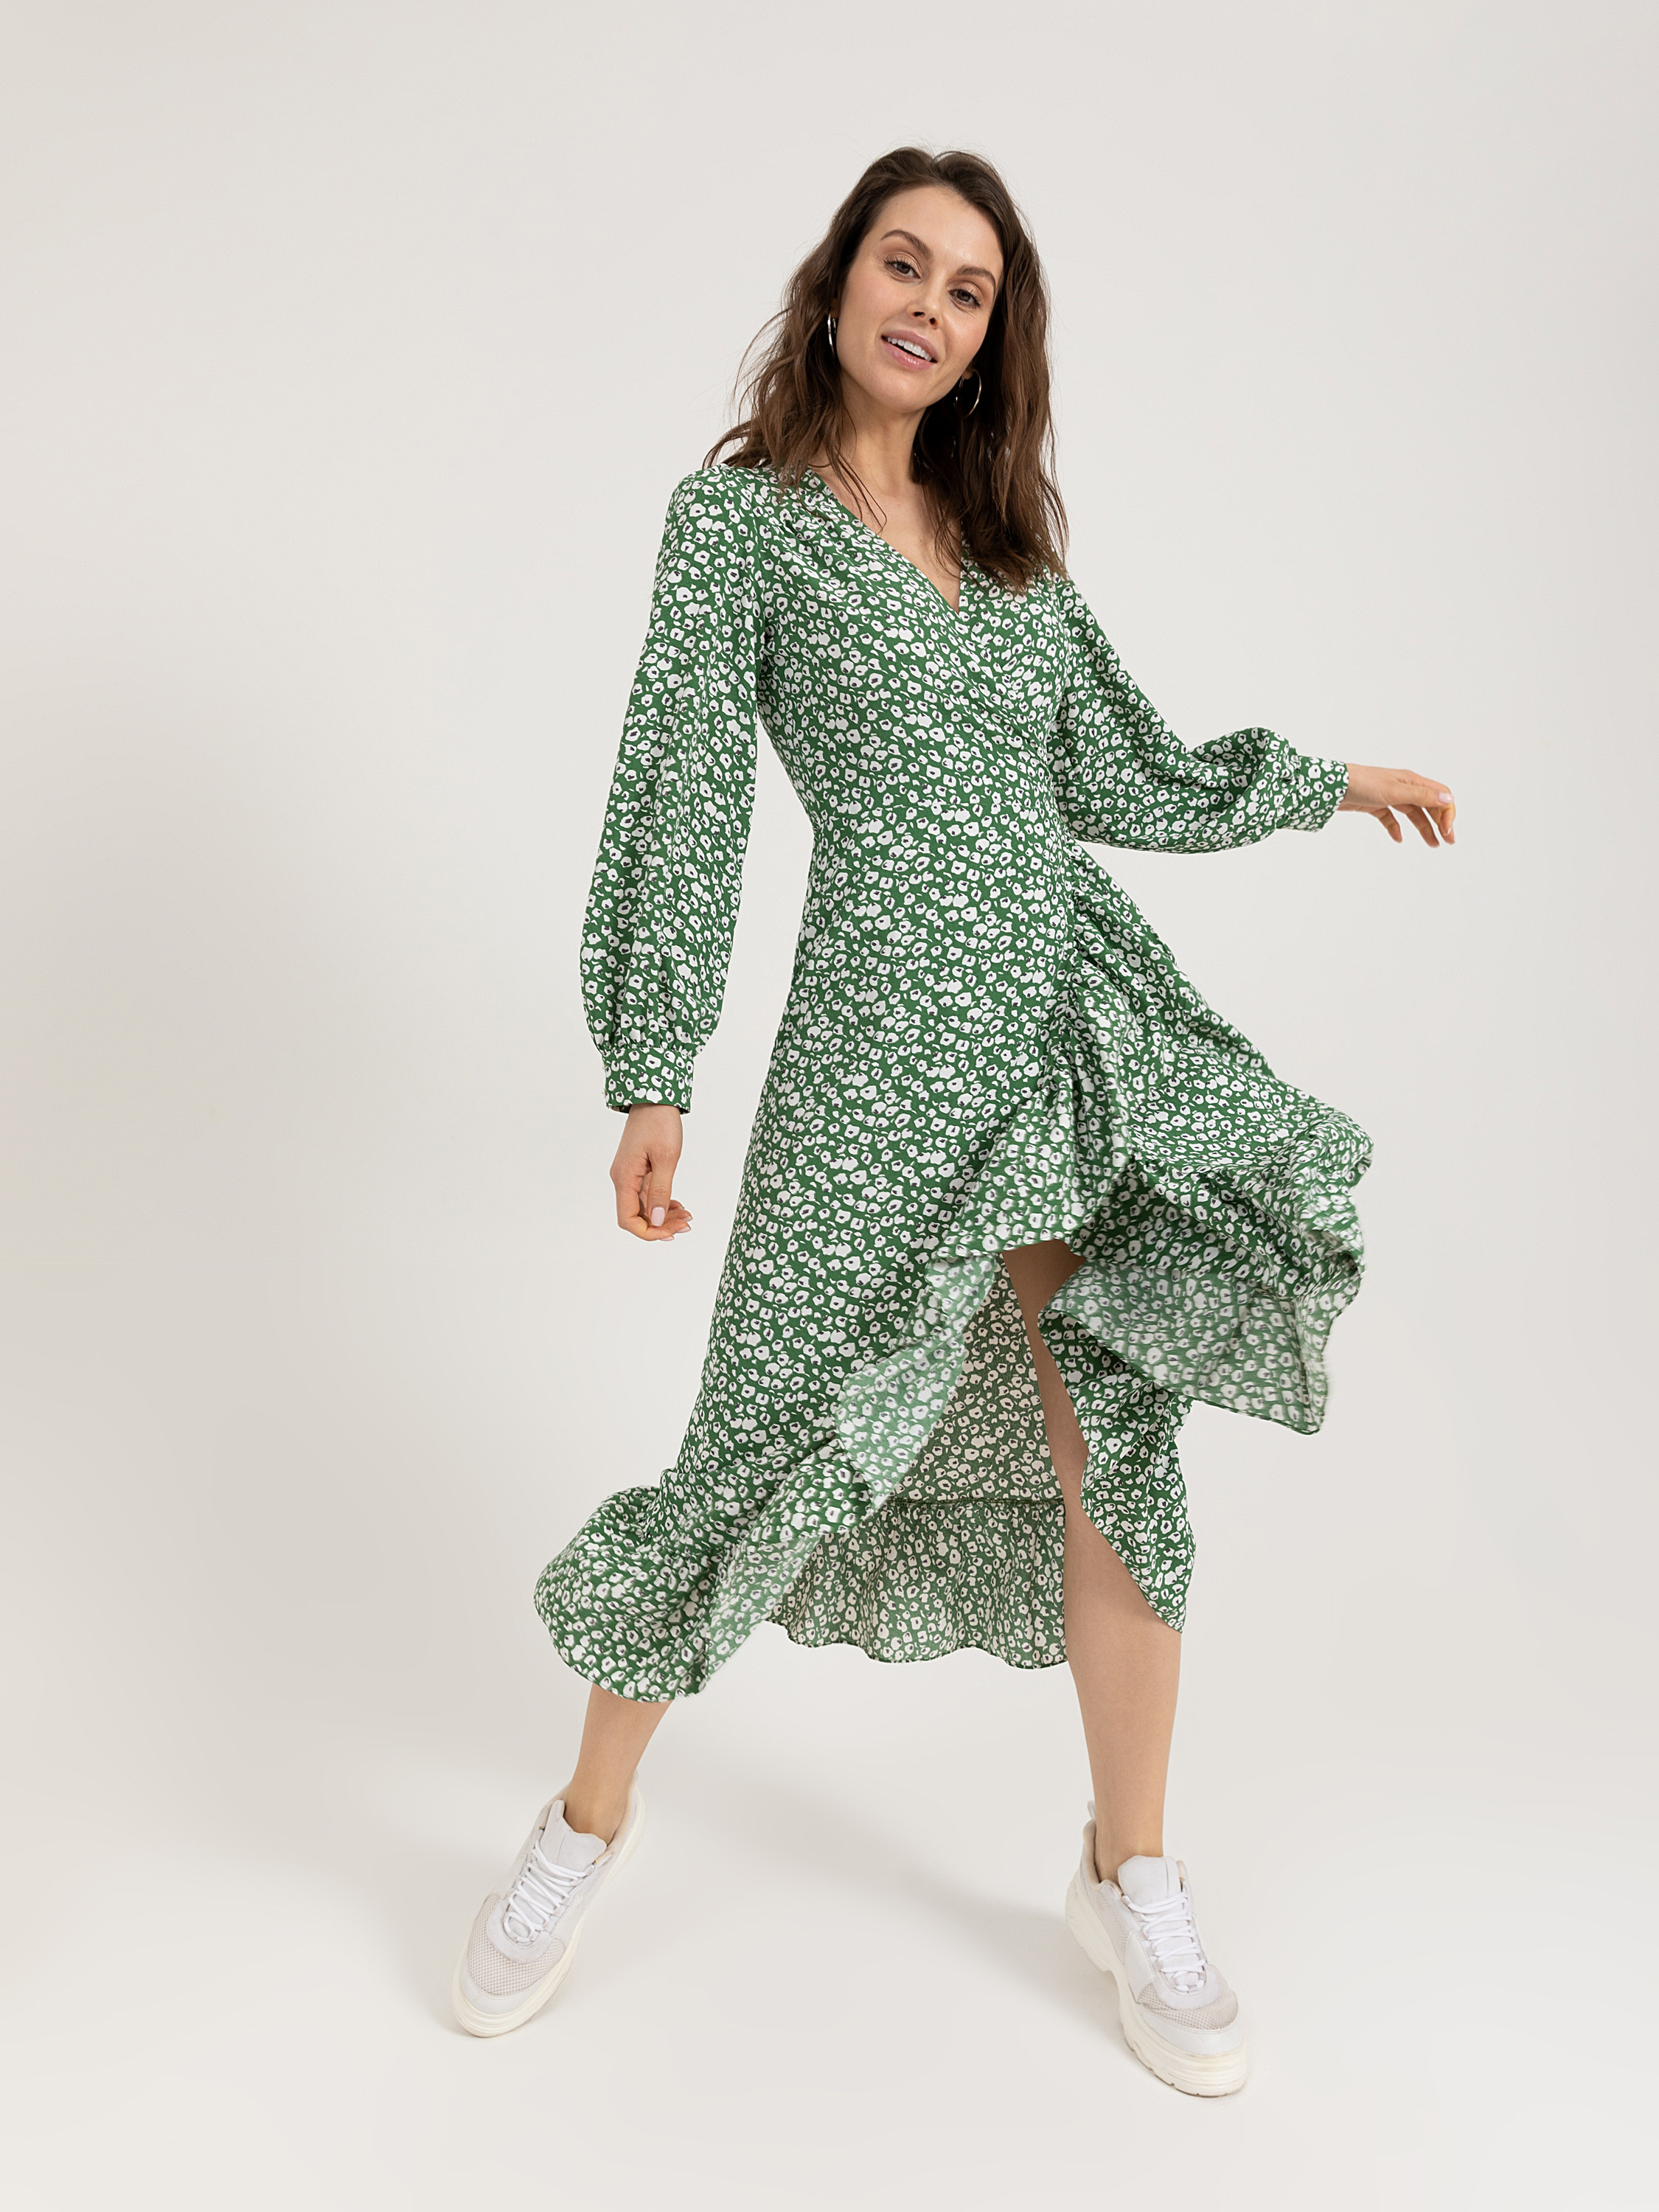 Платье на запах цвет: зеленый принт, артикул: 0803020708 – купить в  интернет-магазине sela